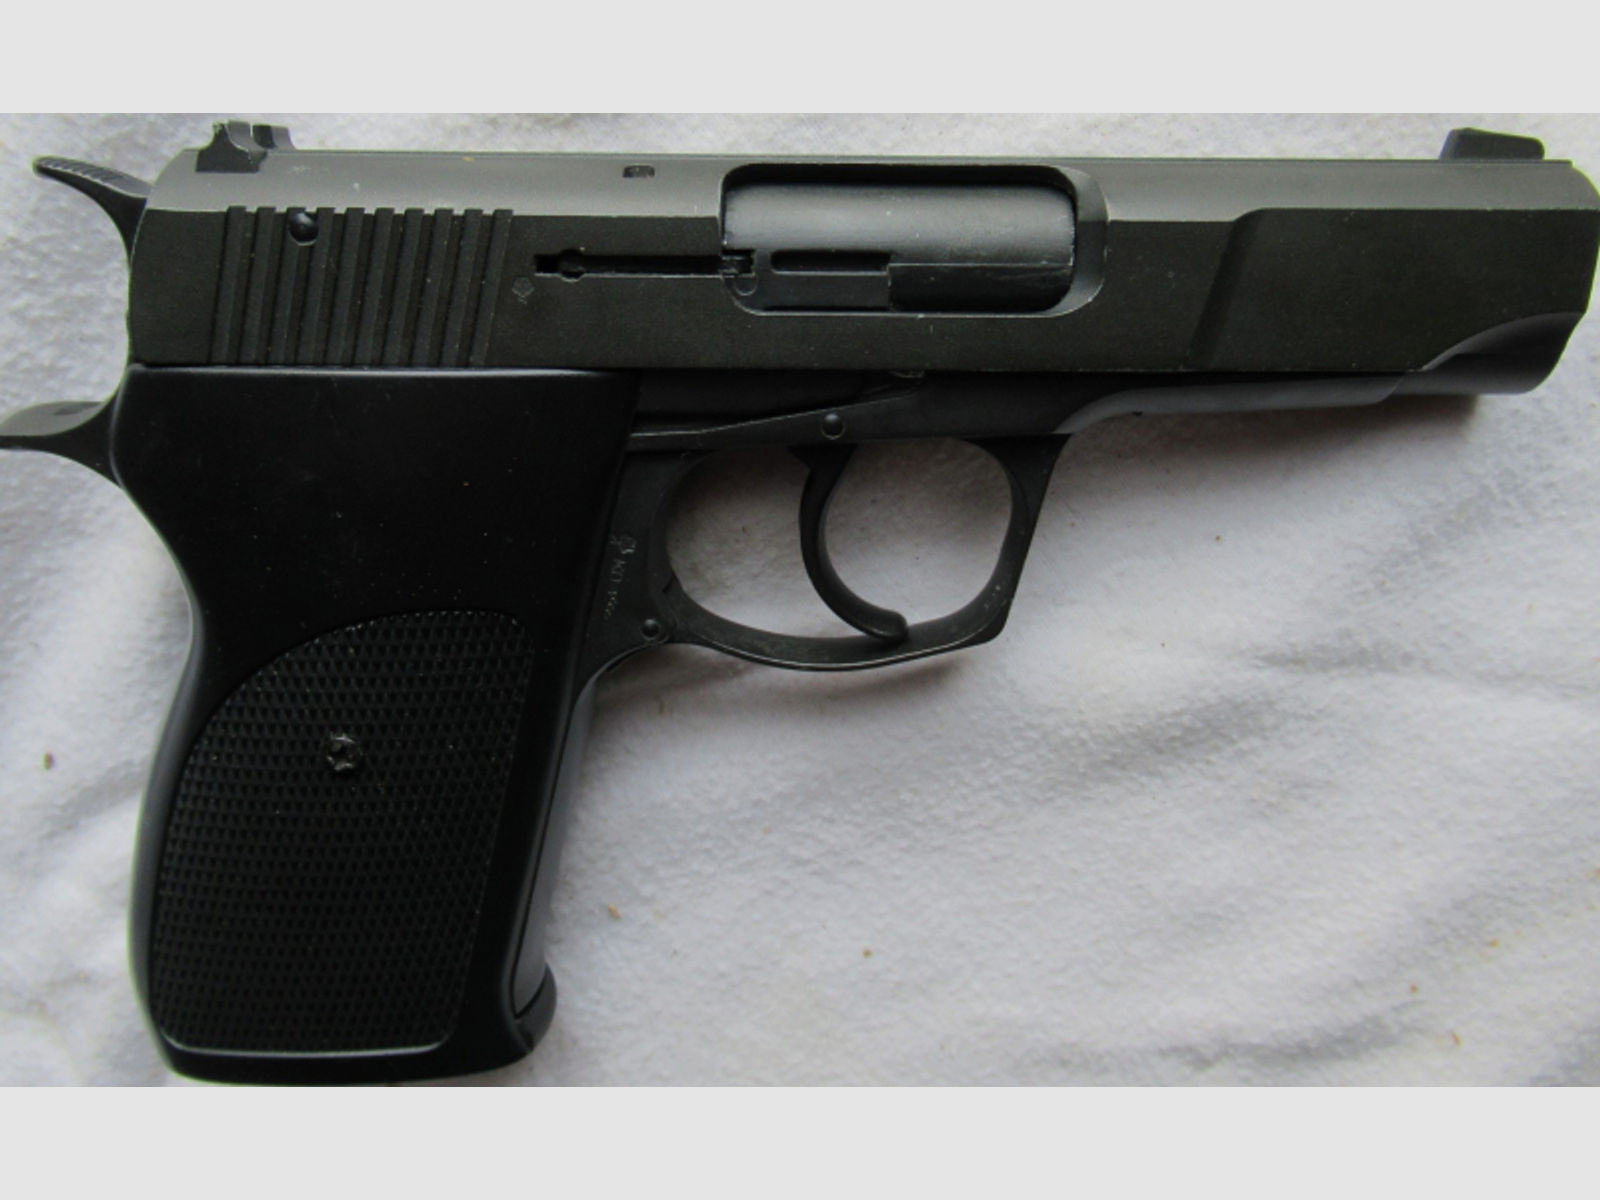 Röhm Mod 725 9mm P.A.K PTB: 551 Schreckschuss-Pistole